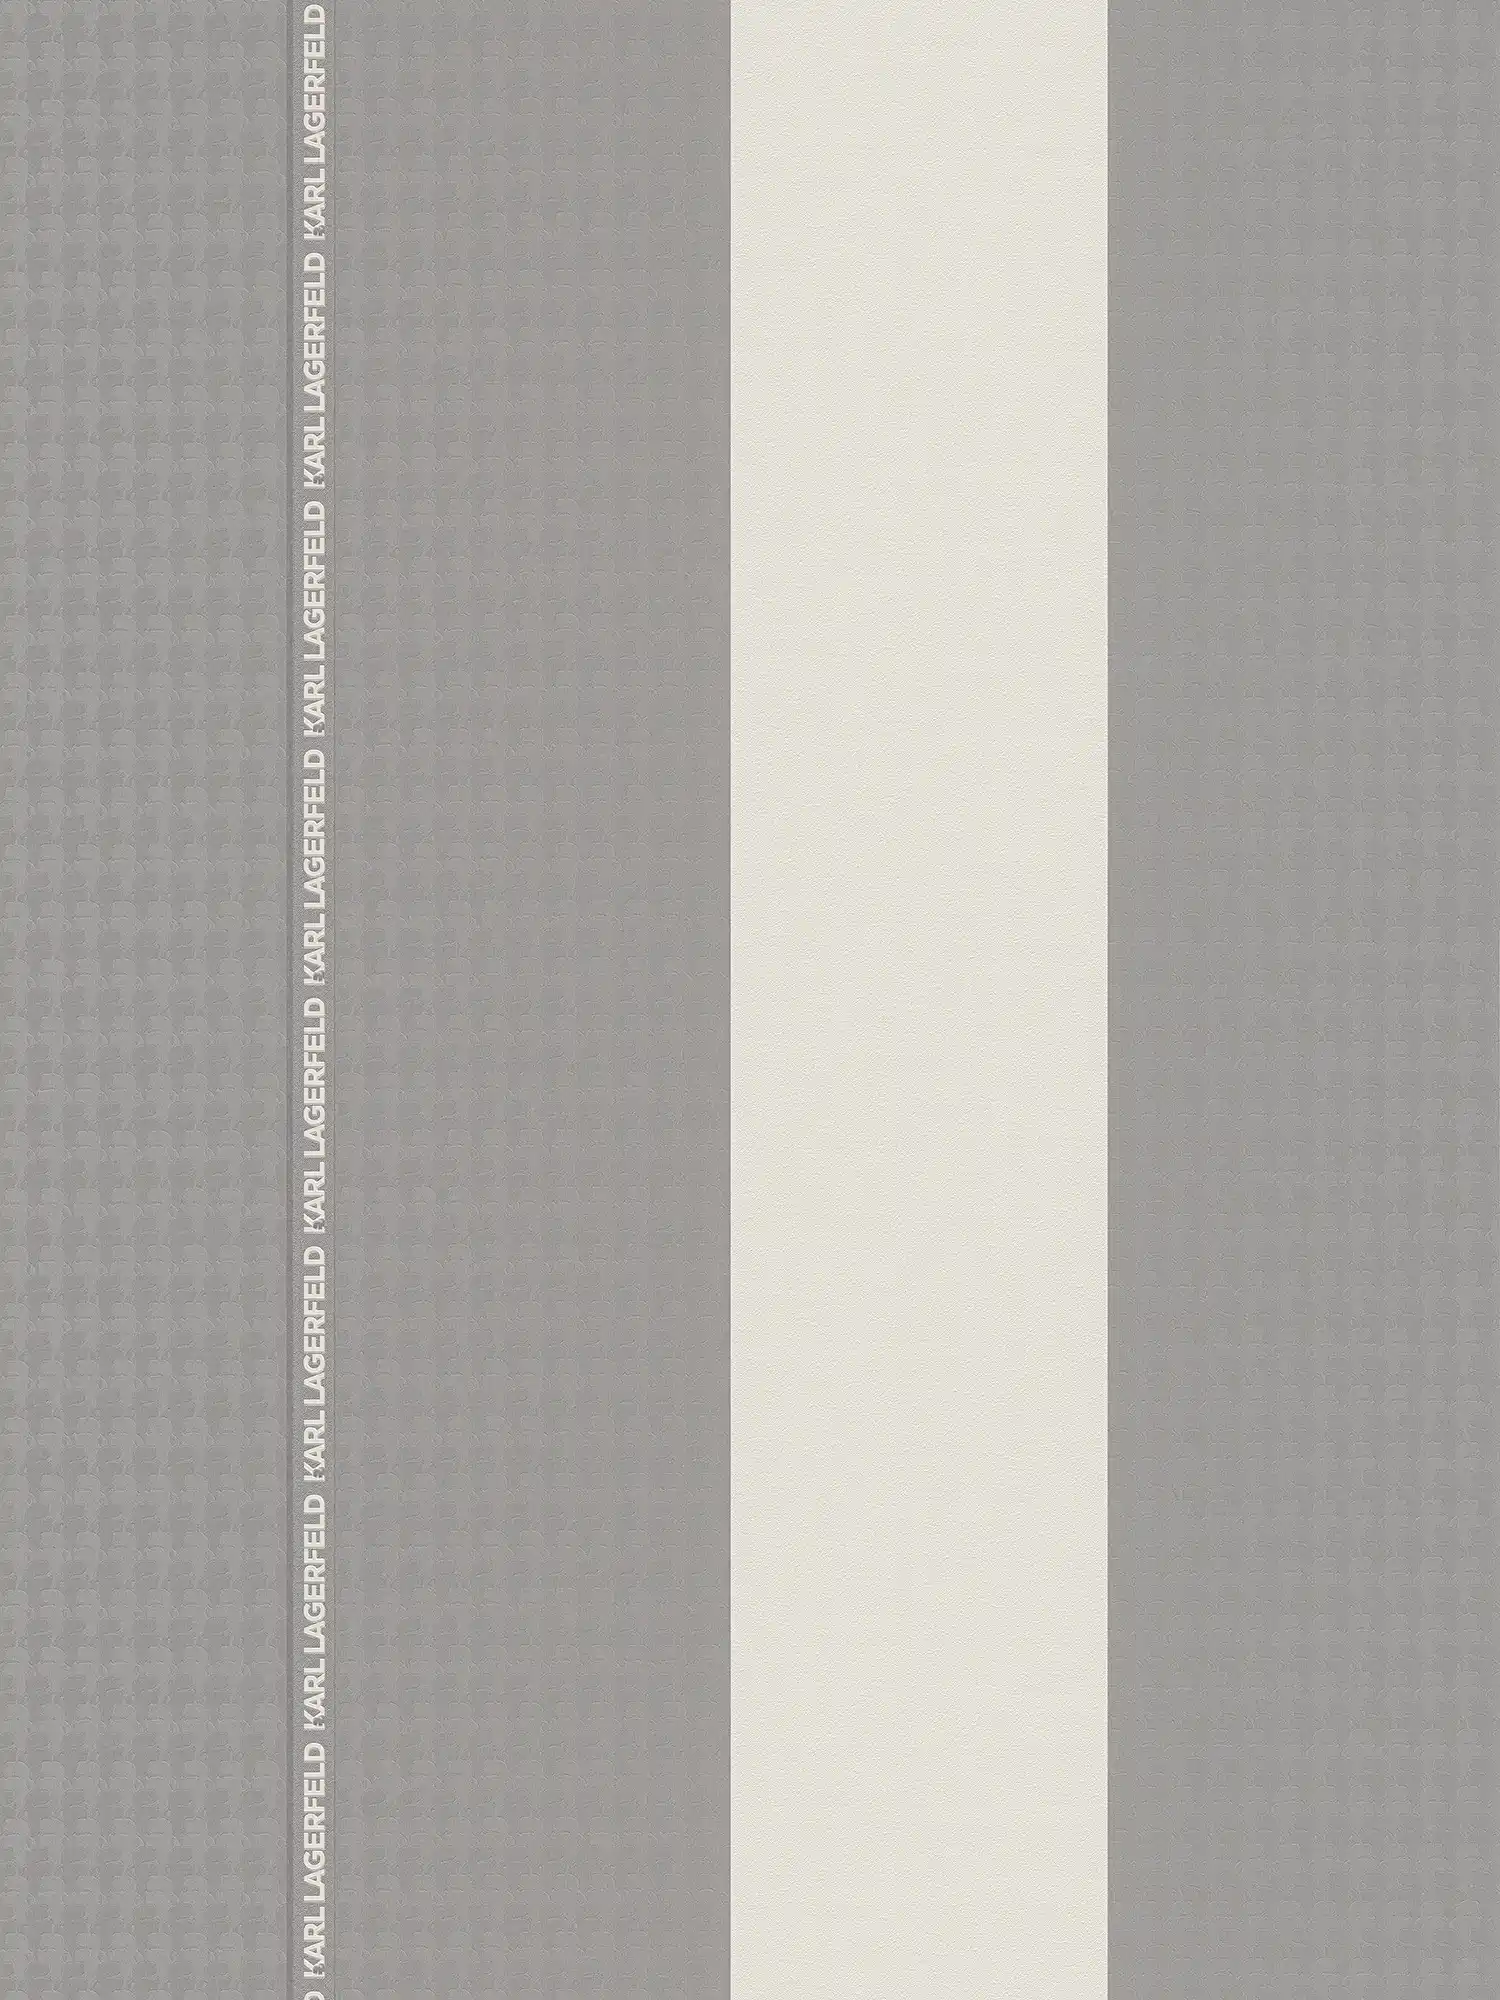 Karl LAGERFELD vliesbehangstroken met textuureffect - grijs, wit
